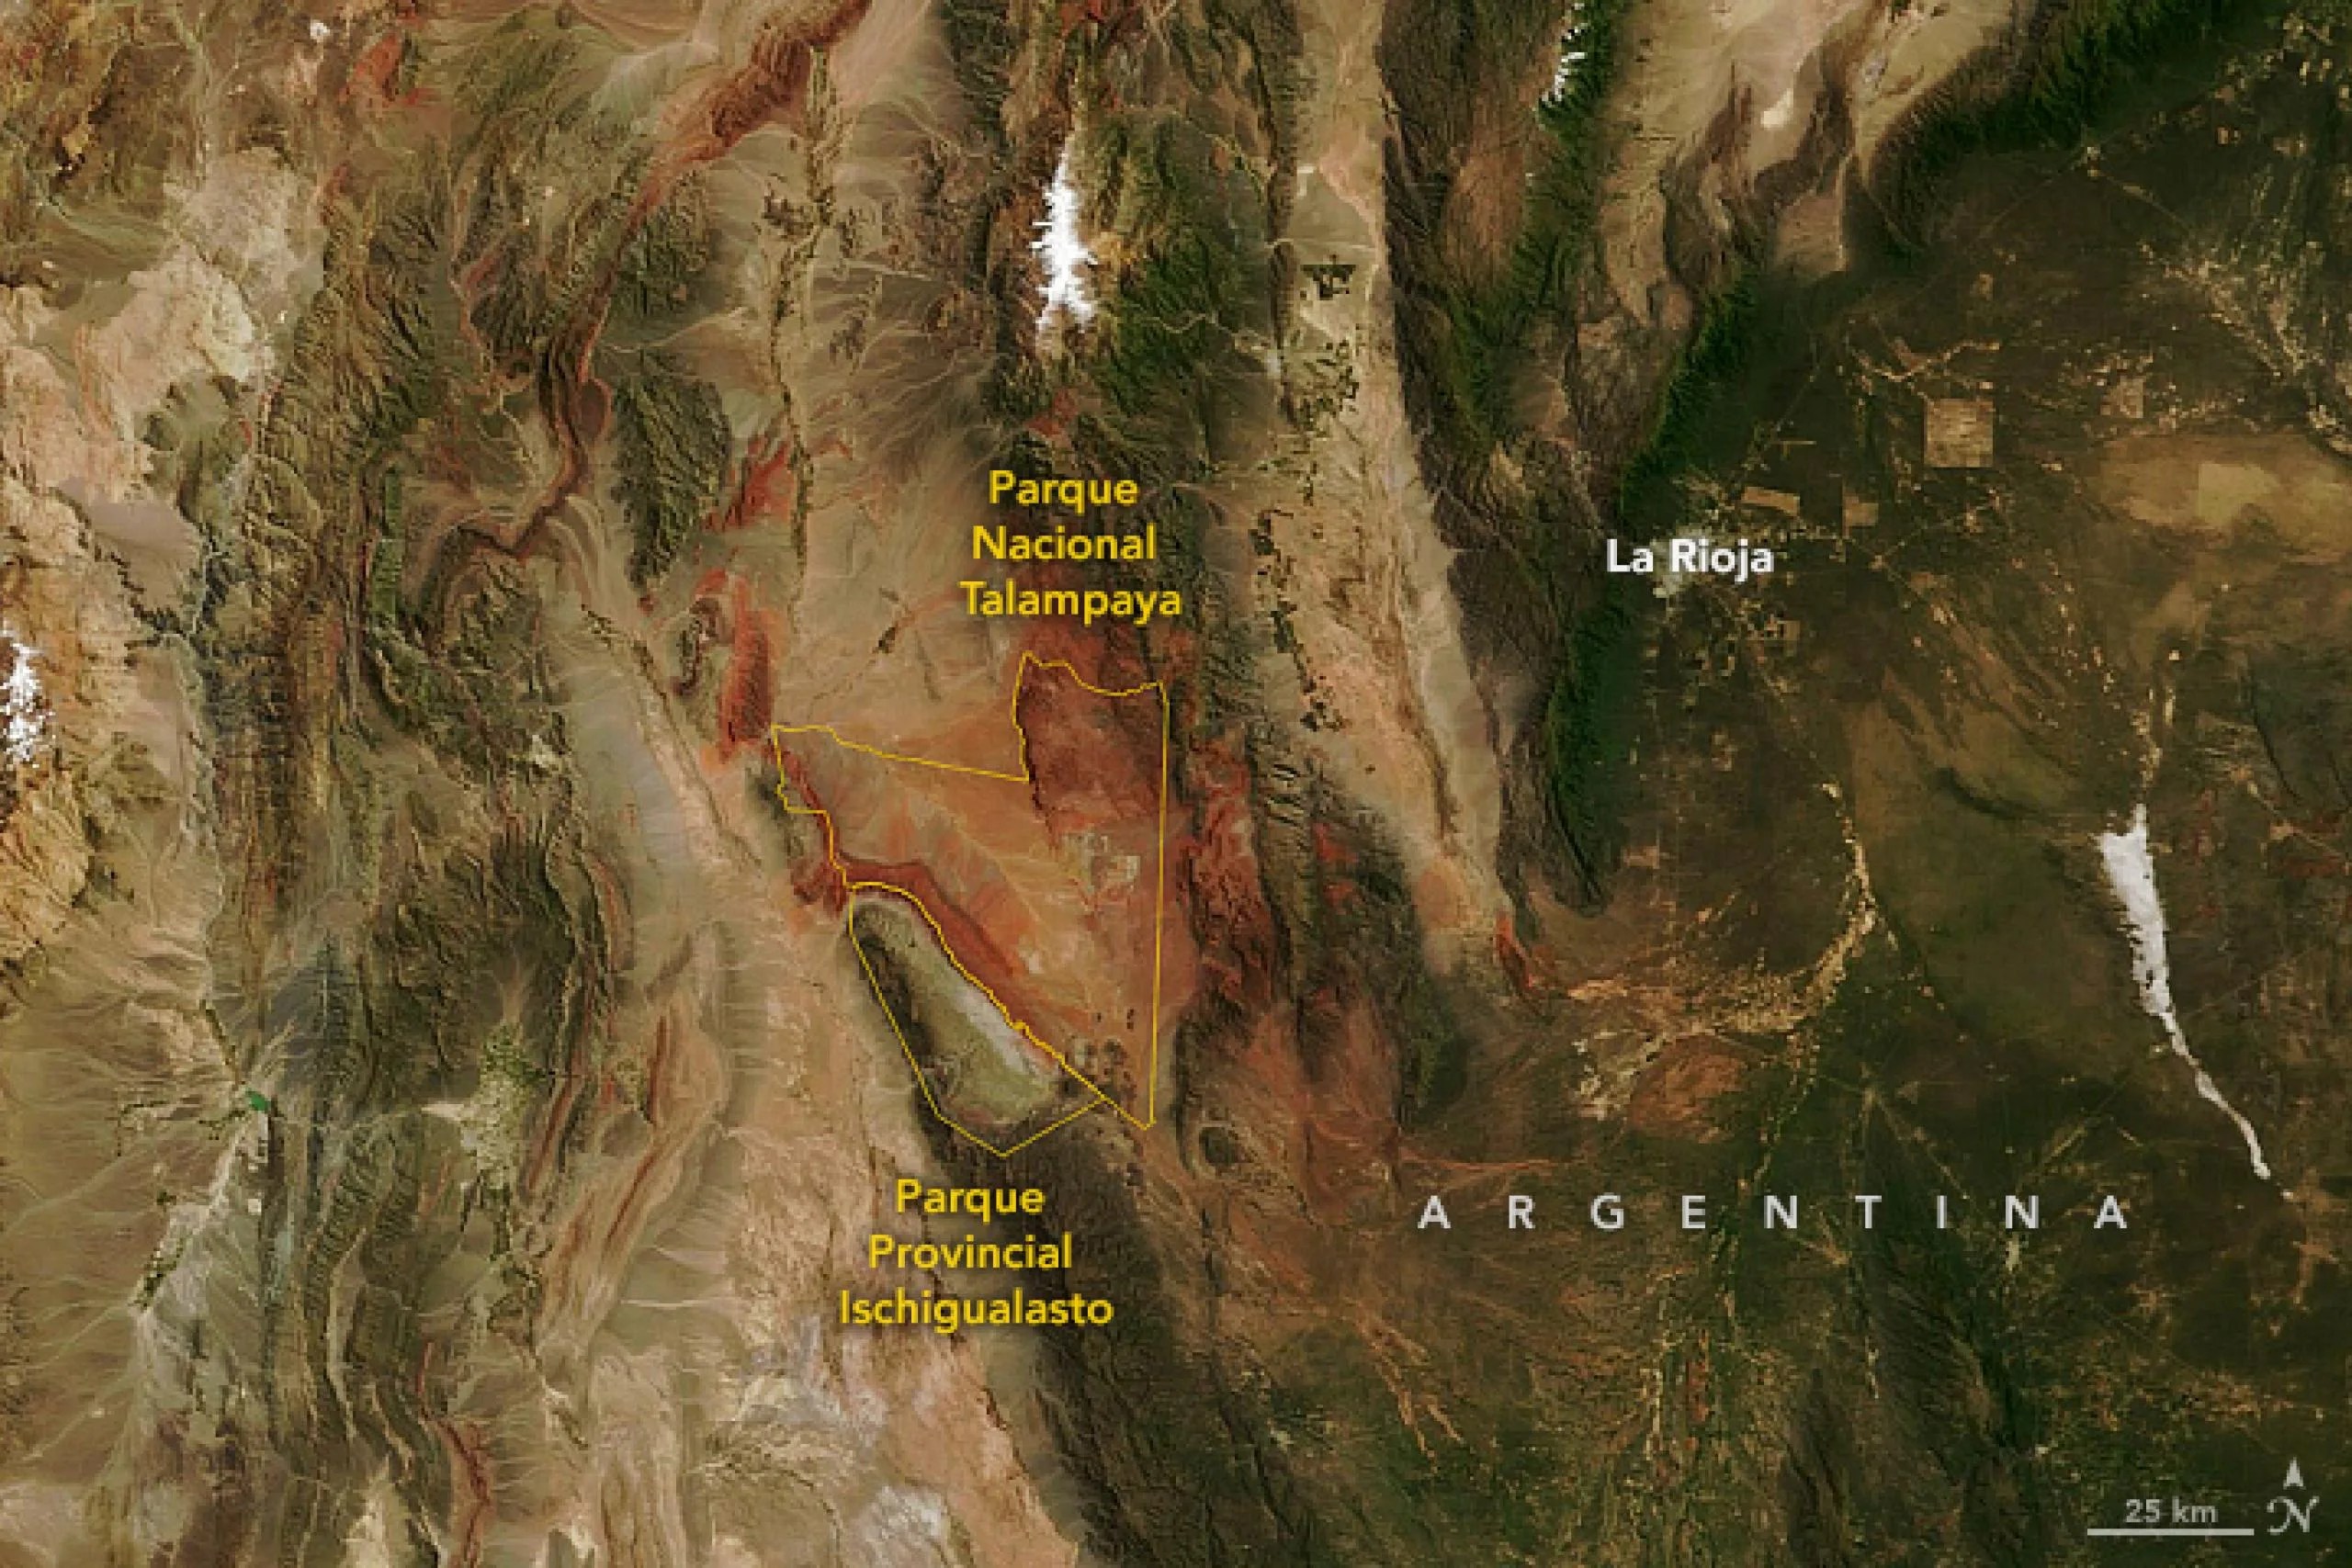 Vista satelital del Parque Nacional Talampaya y del Parque Provincial Ischigualasto en Argentina.